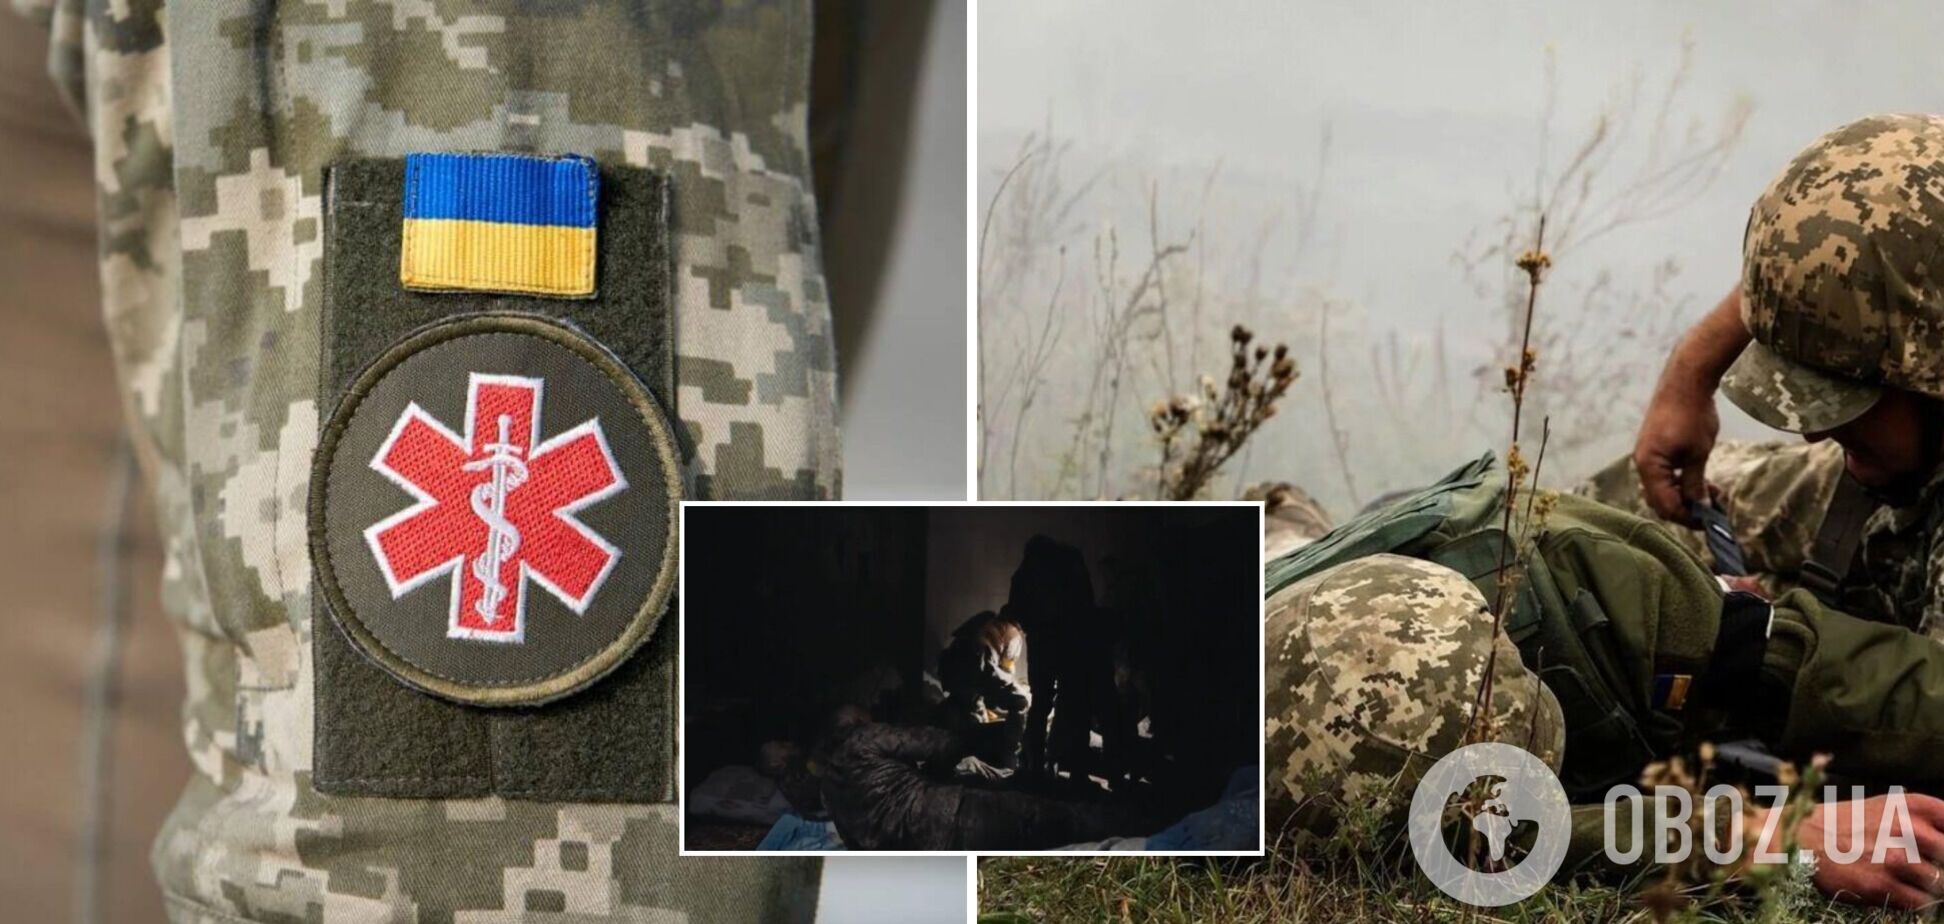 'Ще у футбол зіграємо!': медики полку 'Азов' показали, як рятують поранених солдатів на передовій. Відео